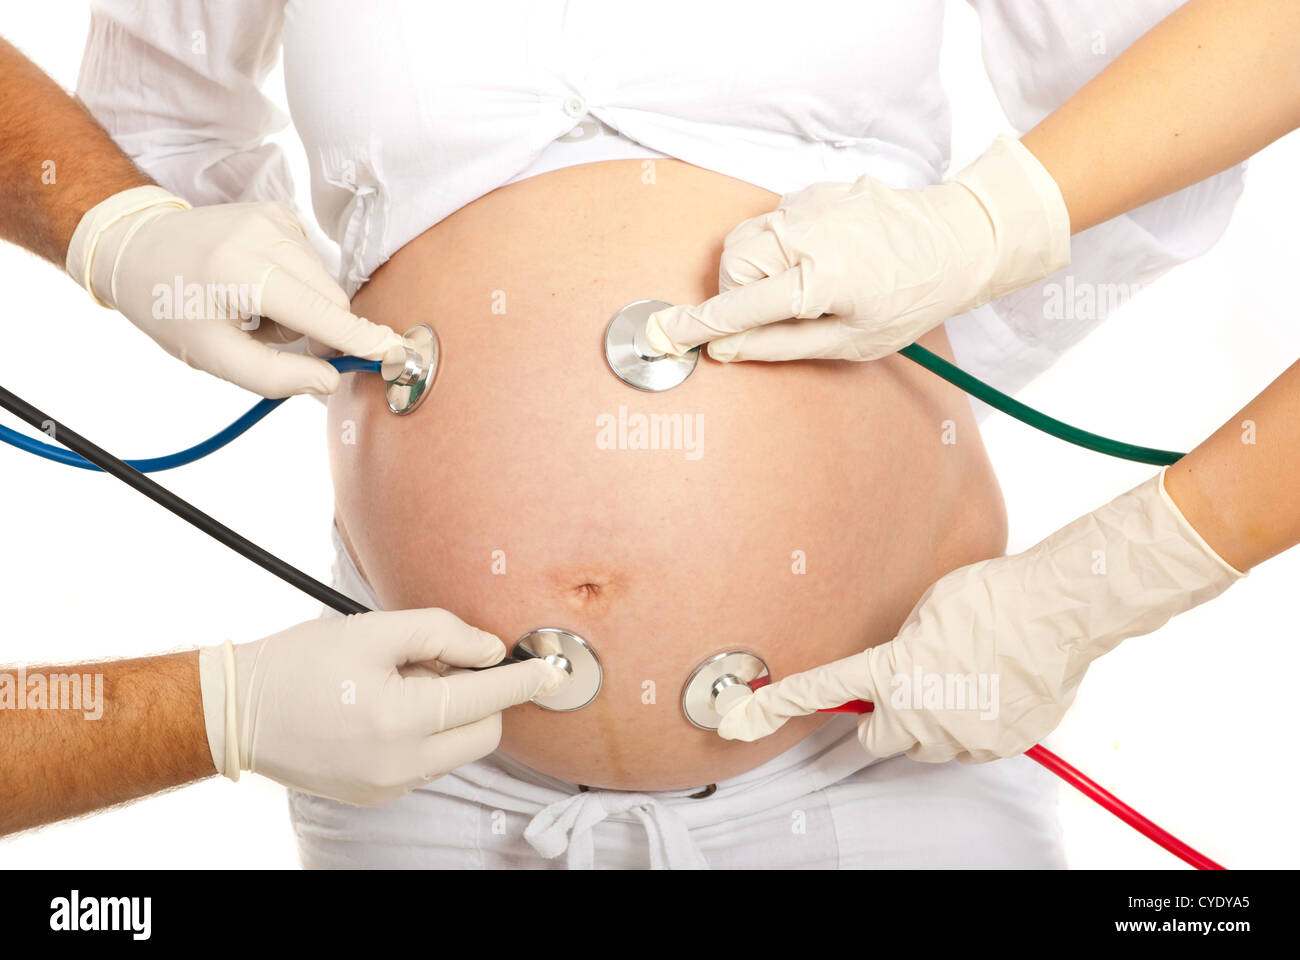 Viele Stethoskope untersuchen schwangeren Bauch isoliert auf weißem Hintergrund Stockfoto